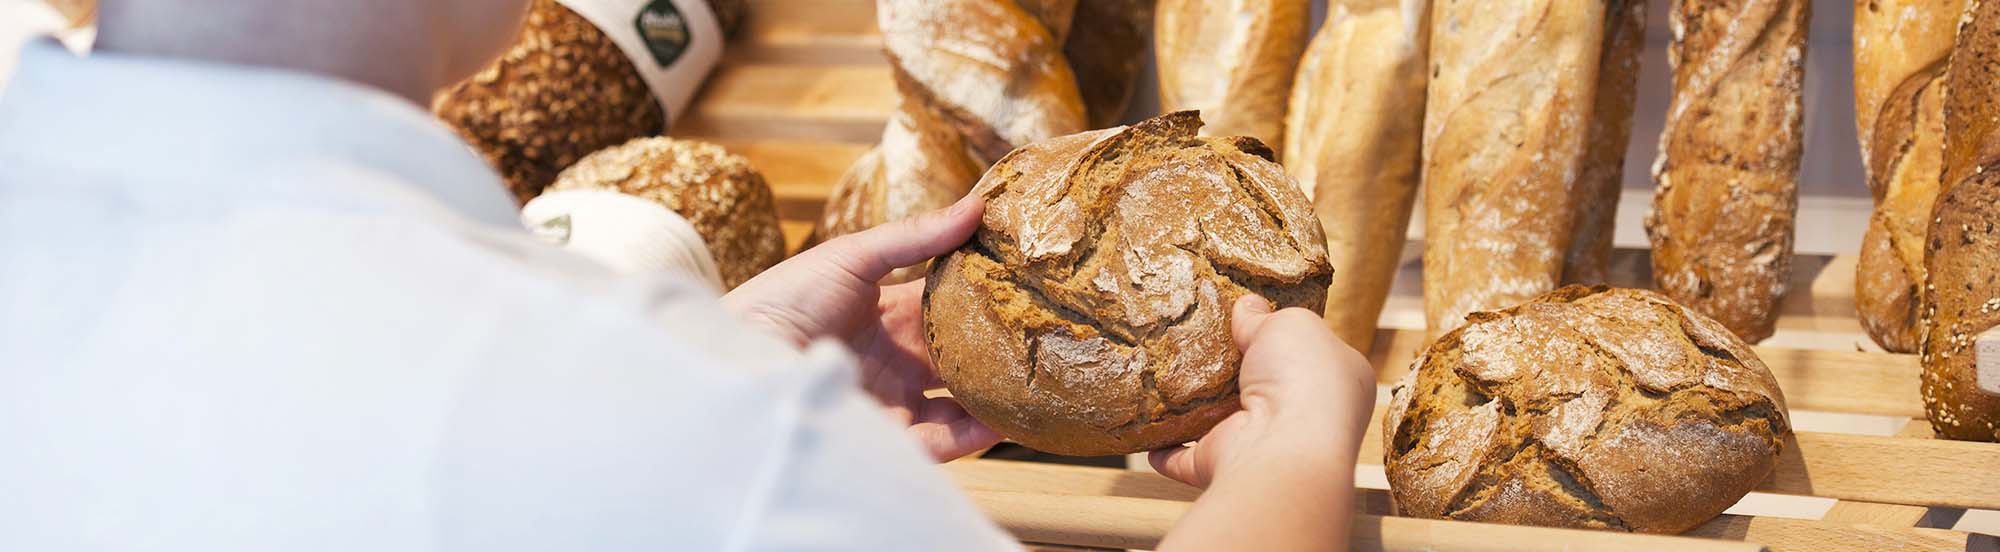 Haubis Brot und Gebäck im Lebensmitteleinzelhandel